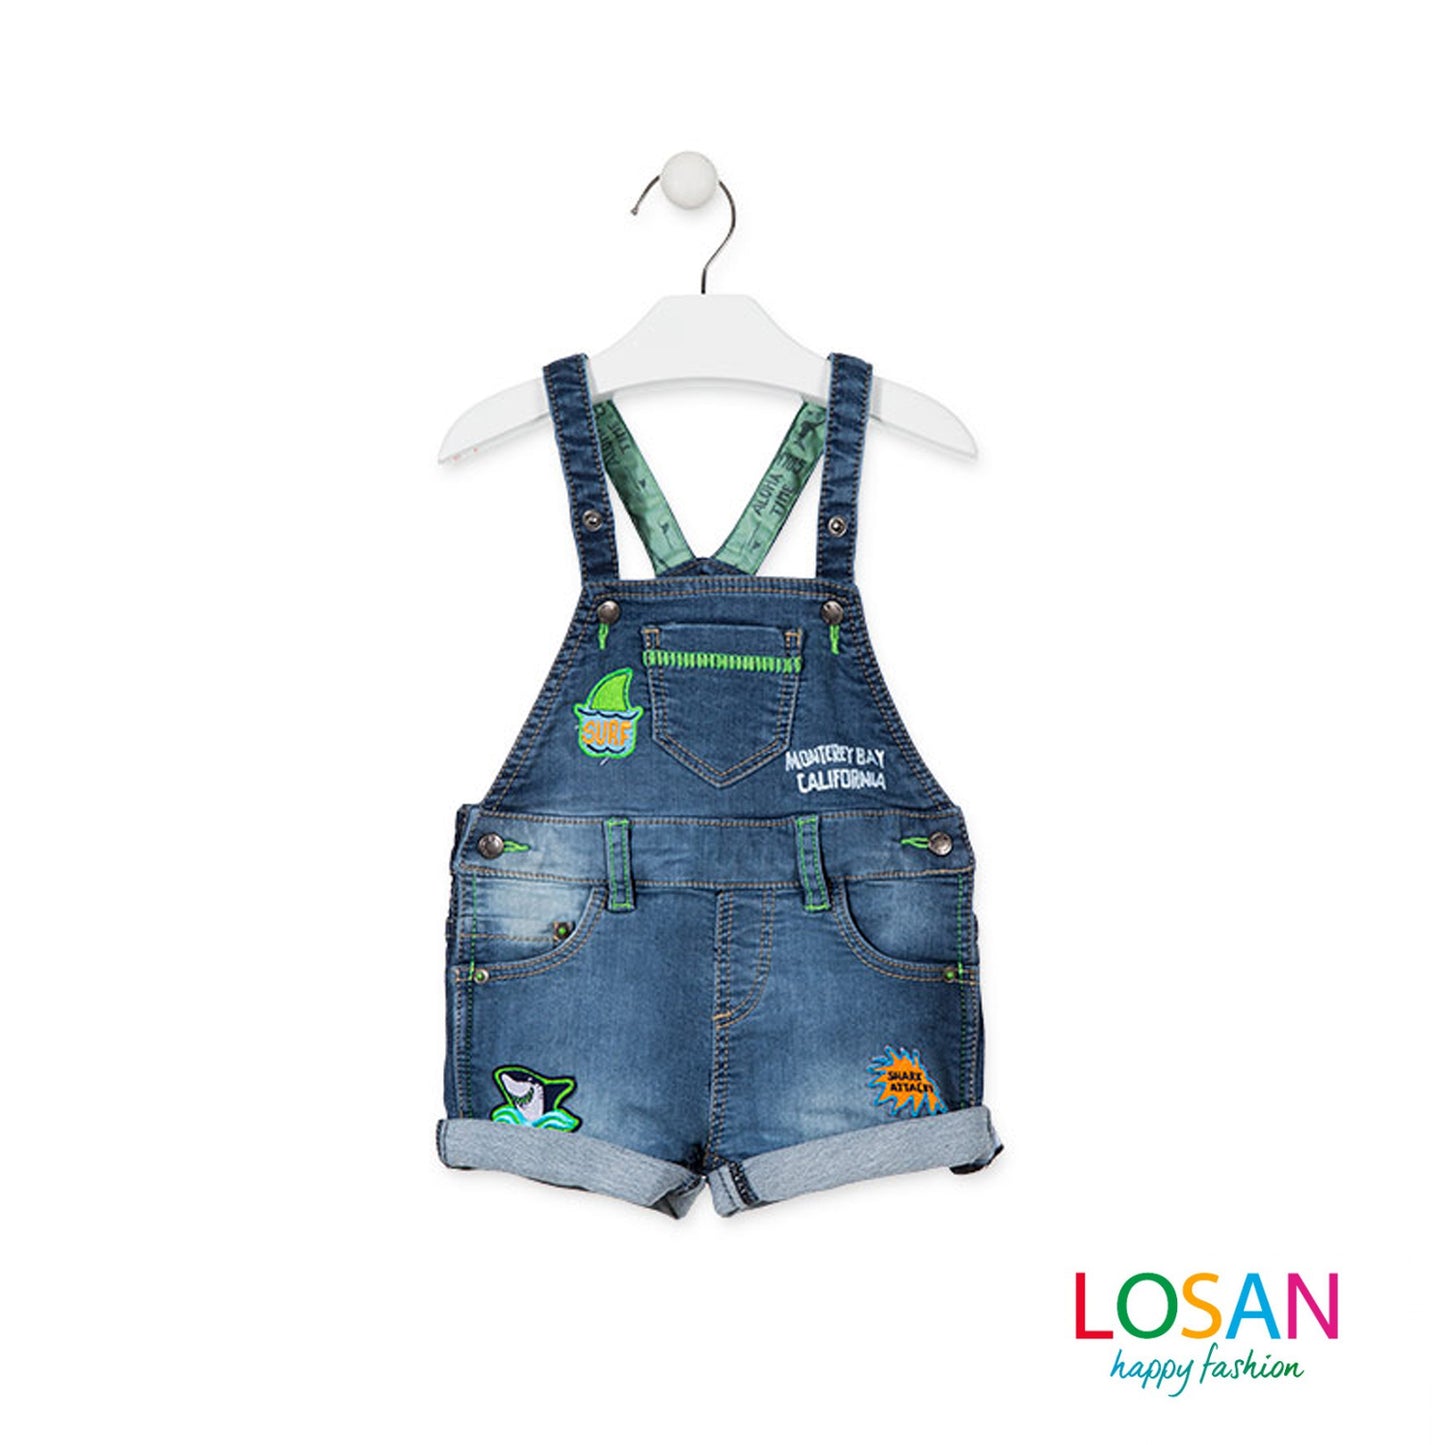 Losan - Salopette in Felpa effetto Jeans Baby Bambino